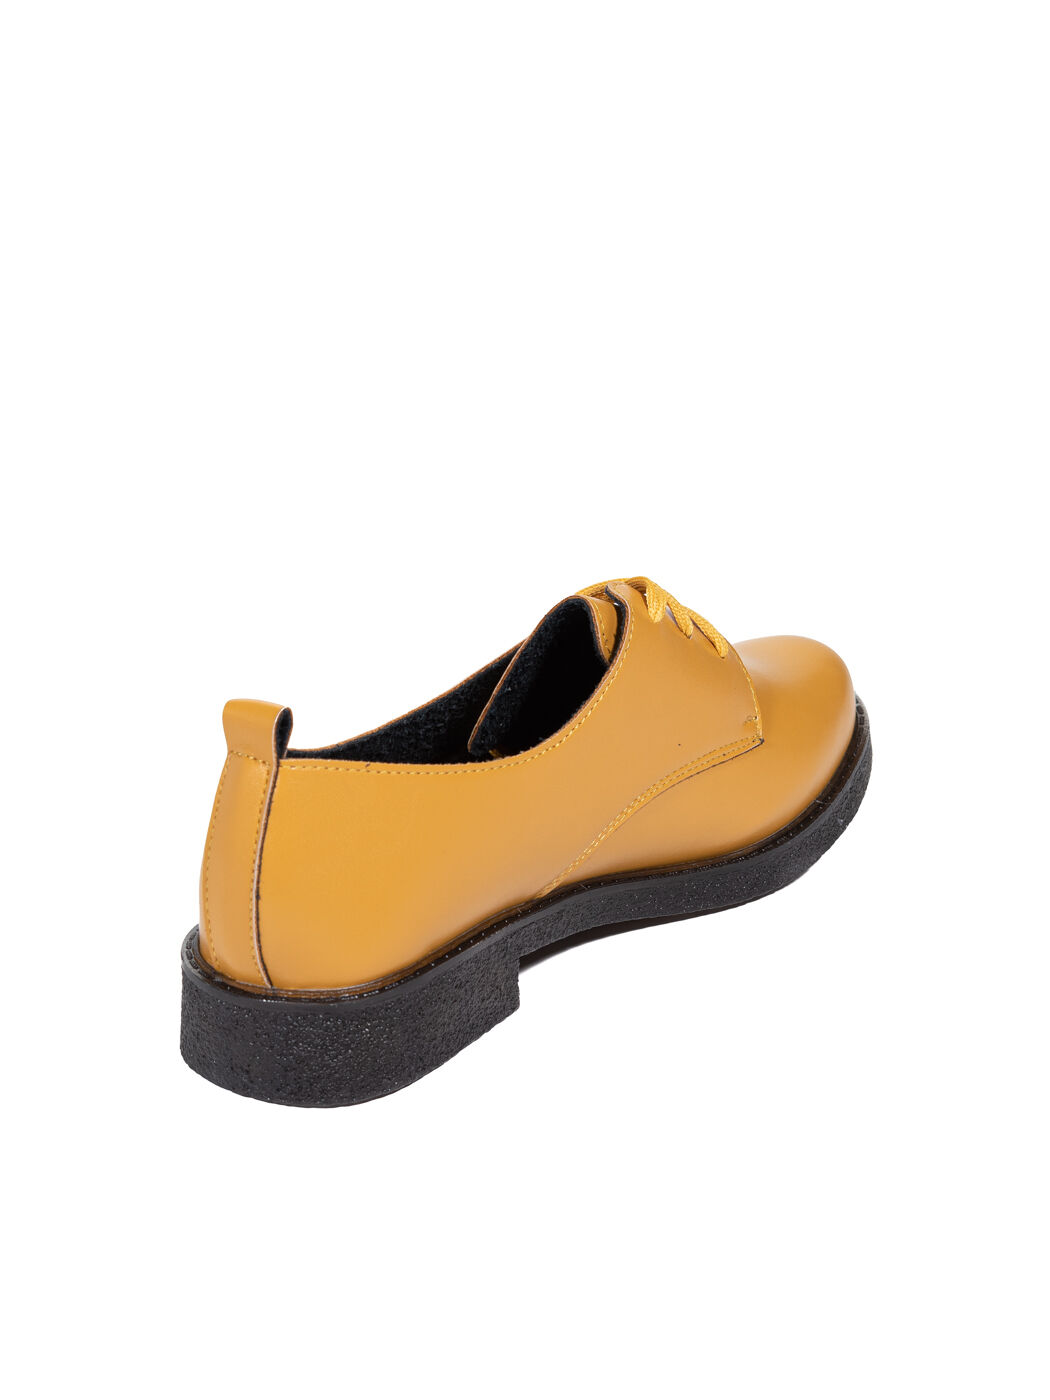 Туфли Oxfords женские жёлтые экокожа каблук устойчивый демисезон 3M вид 1